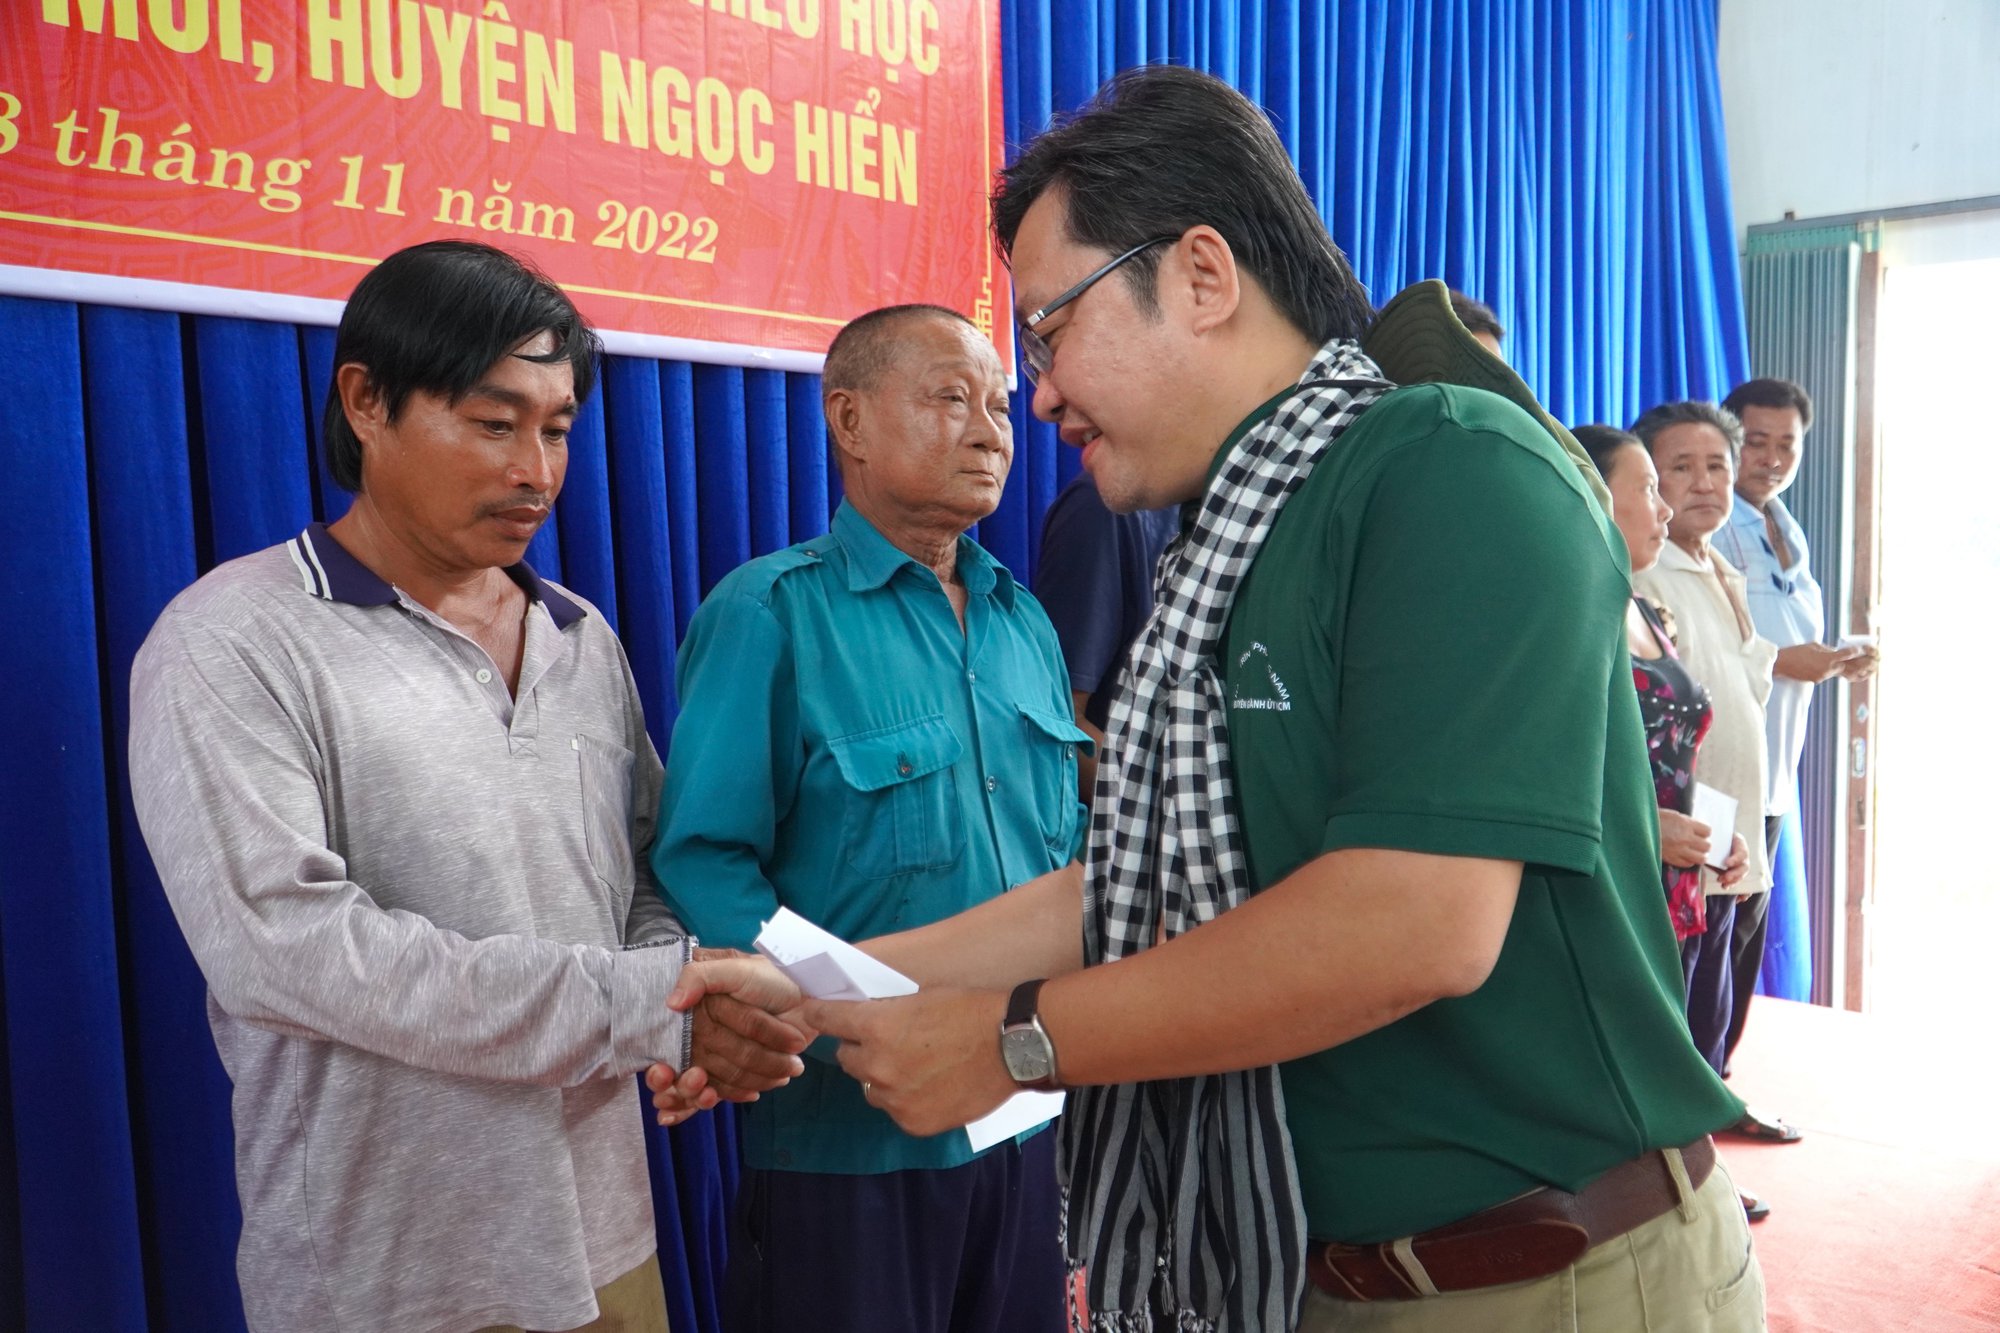 Đoàn cán bộ tuyên giáo, báo chí TP HCM tặng 100 phần quà cho vùng Đất Mũi - Ảnh 2.